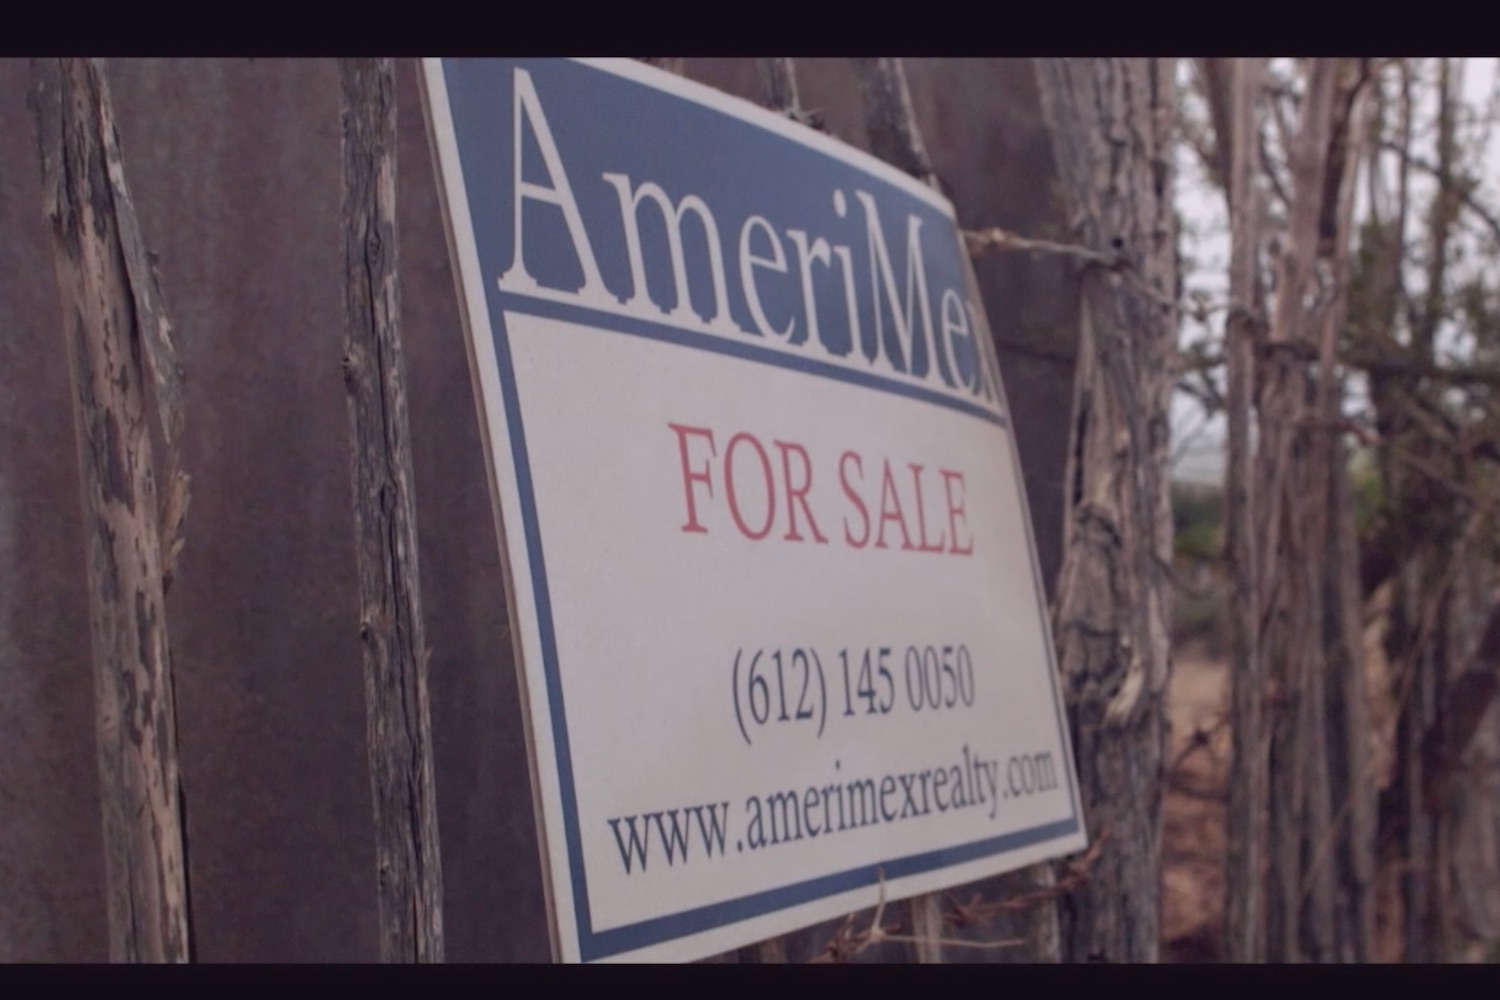 Mensaje que anuncia la venta de la residencia, por parte de Amerimex